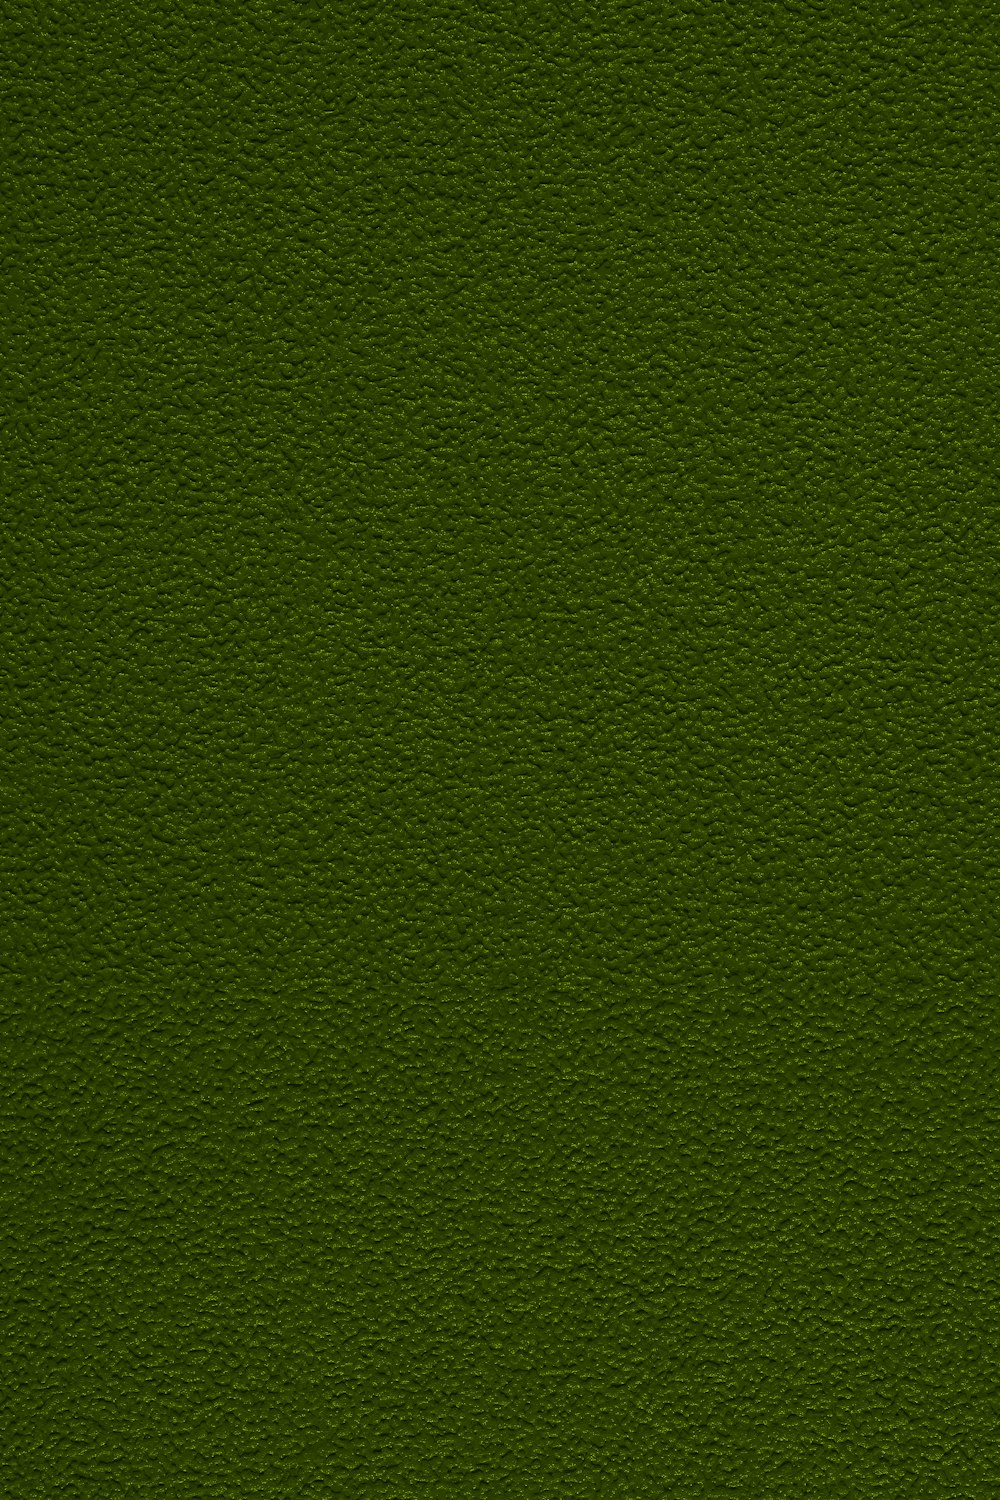 un gros plan d’une surface verte avec une petite parcelle d’herbe